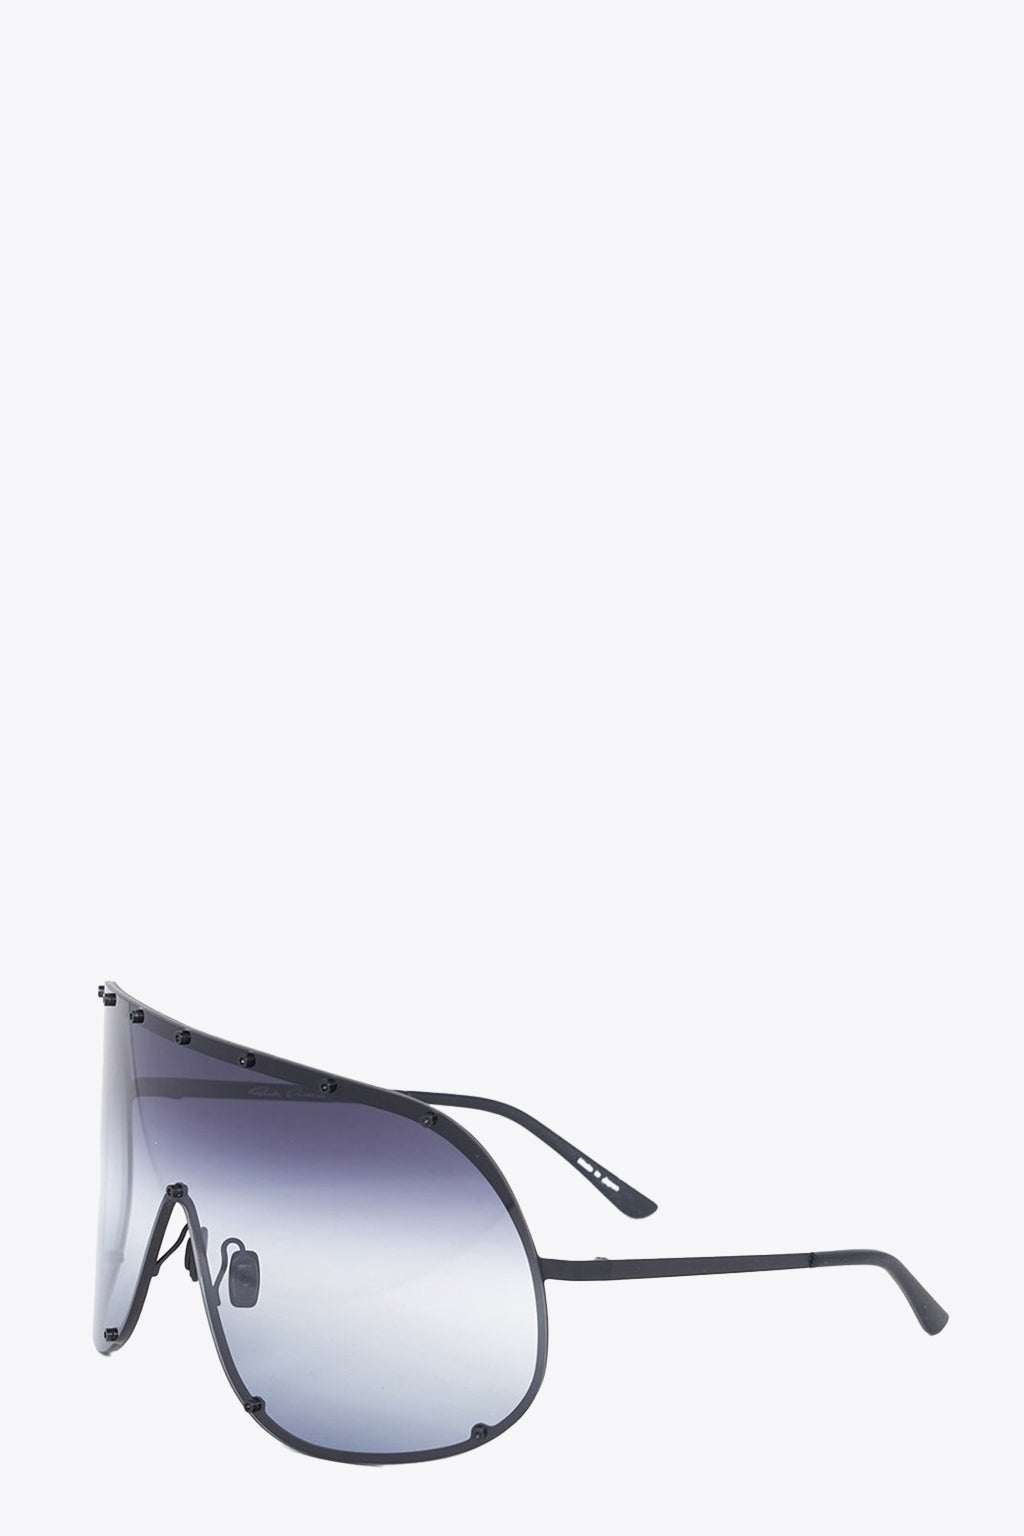 alt-image__Black-steel-mask-sunglasses-with-degradè-lens---Shield